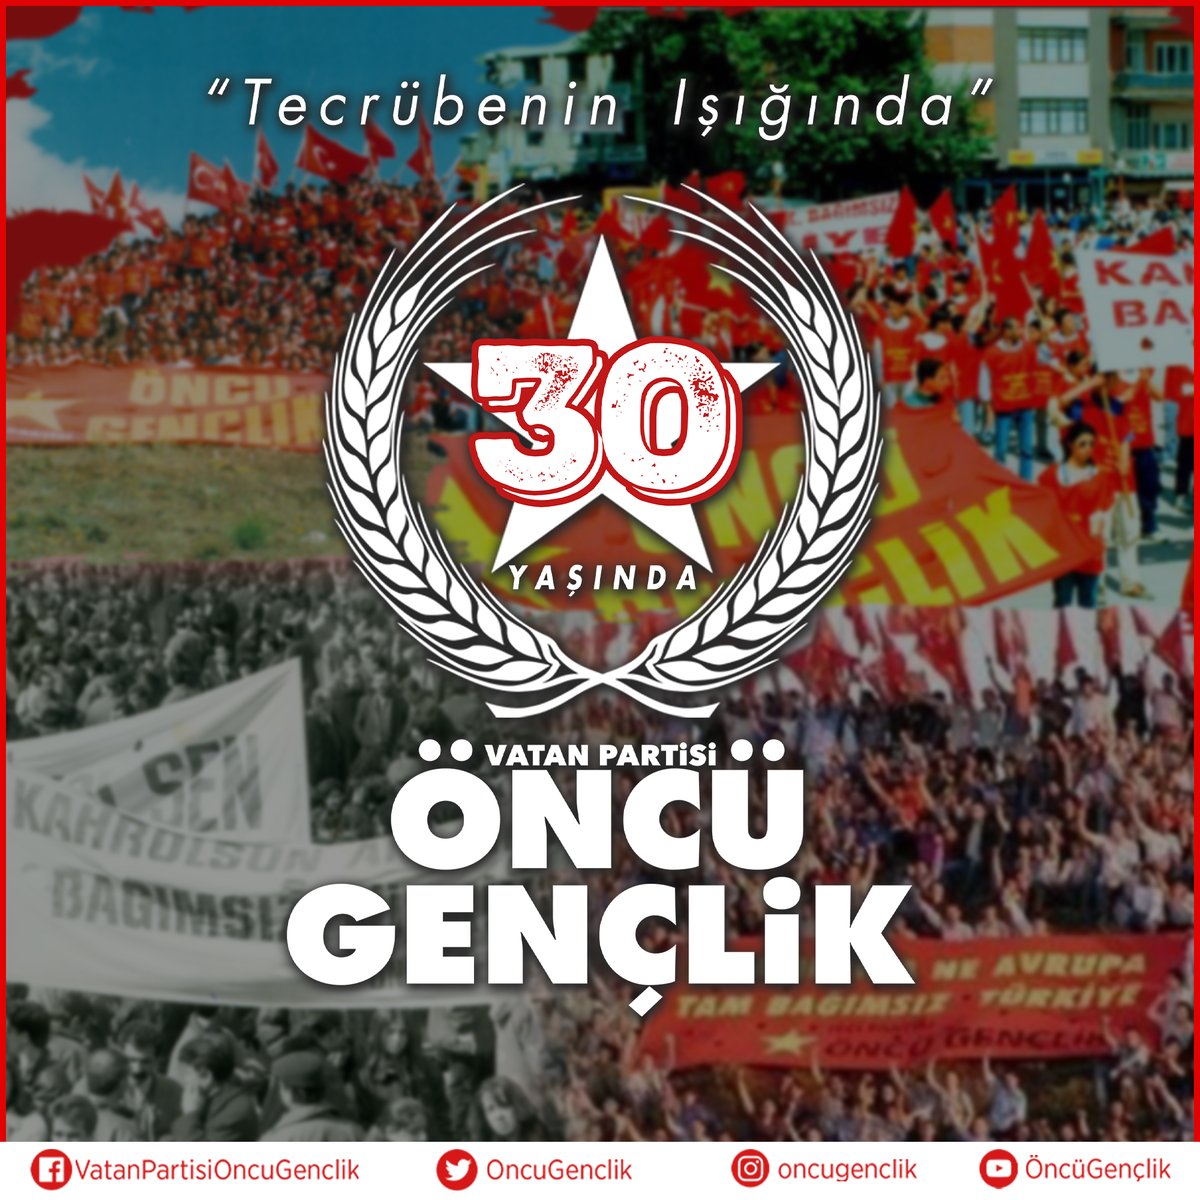 Gençlik hareketinin çelik çekirdeği, Tam bağımsız Türkiye'nin teminatı, Türk Devrimi'nin kadro ocağı, Vatan Partisi Öncü Gençlik bugün 30 Yaşında! Milletimizin geleceği ve umudu, Türk gençliğinin bilinci olan teşkilatımızın 30. yılının mutluluğunu paylaşıyoruz.…